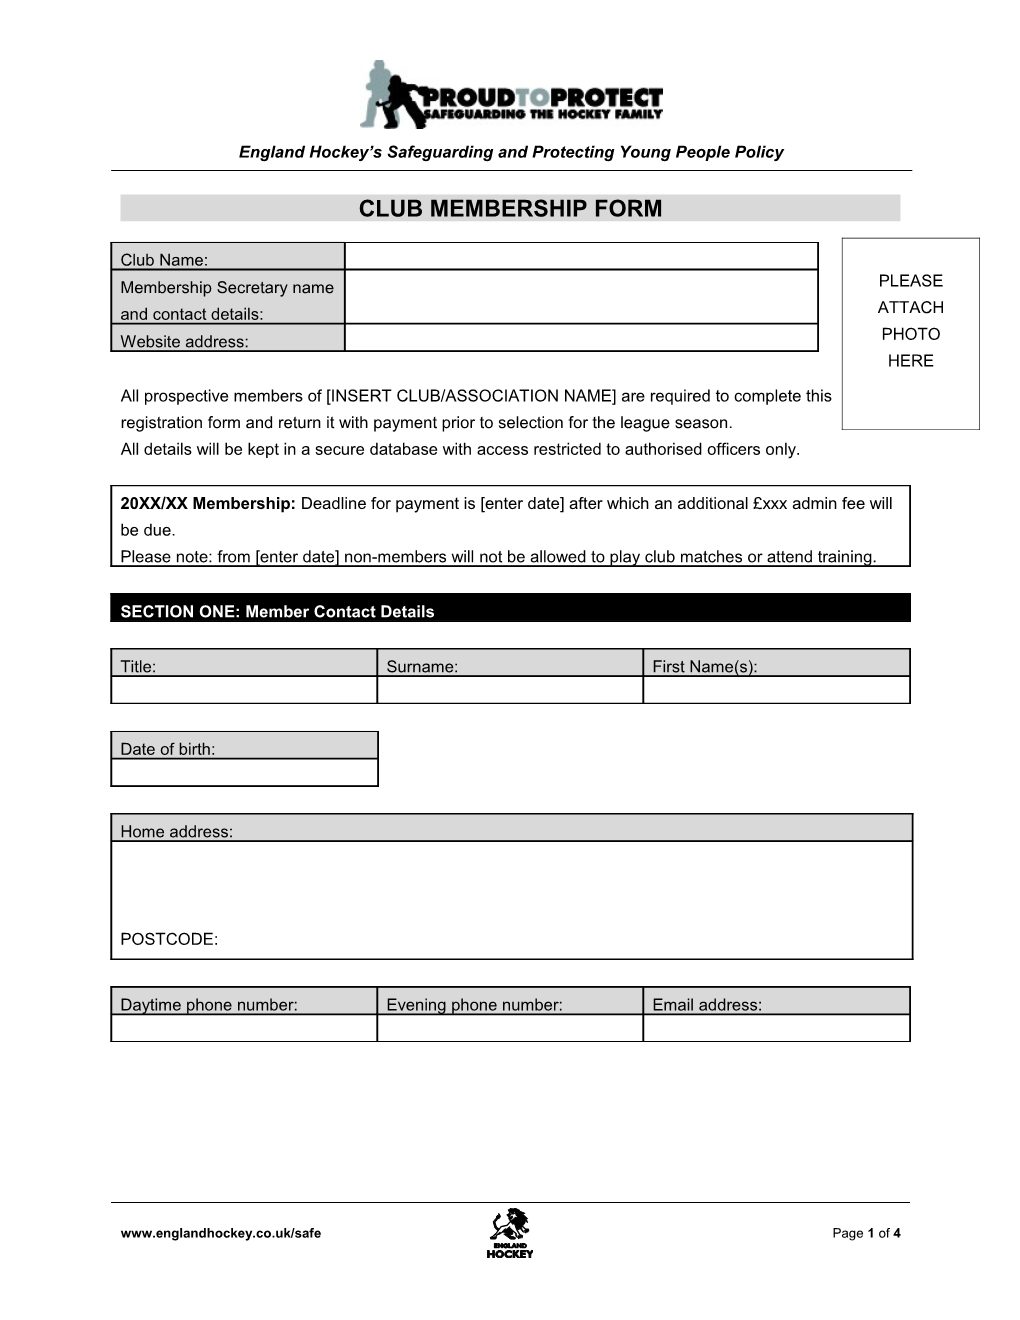 Club Membership Form